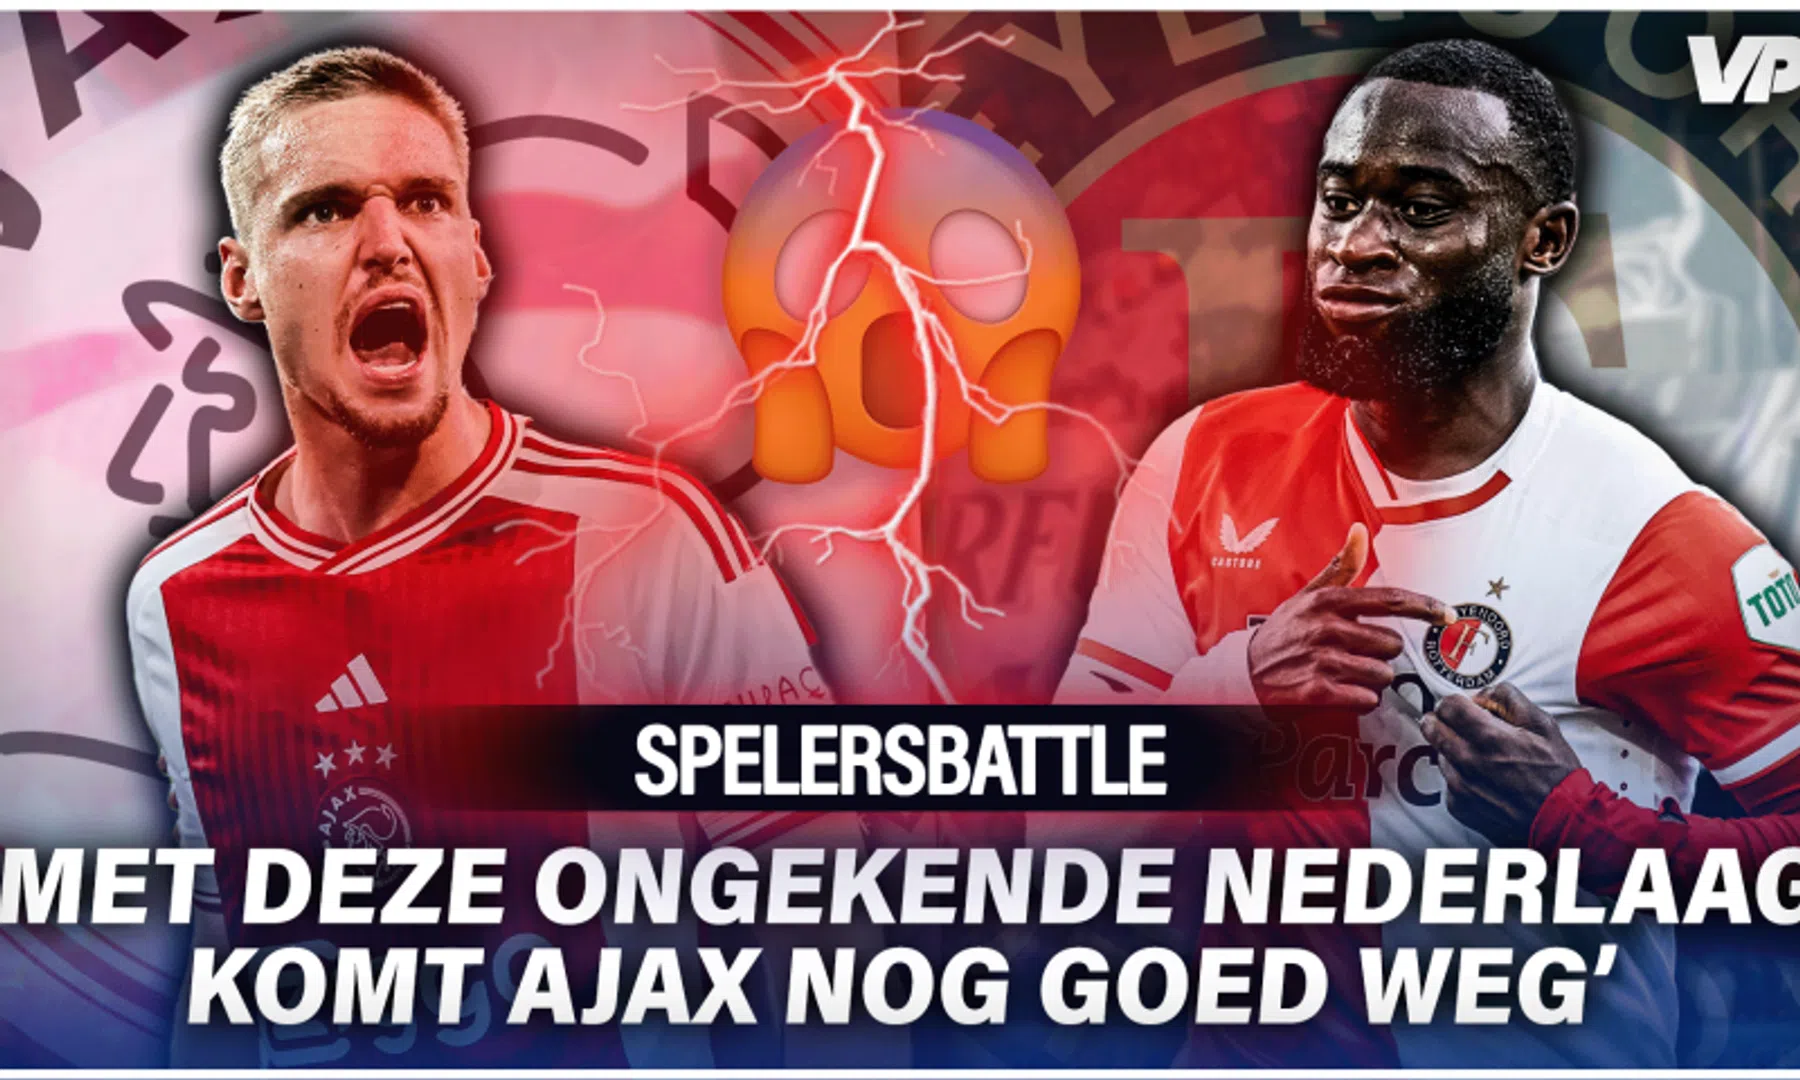 Spelersbattle Ajax - Feyenoord: stevige oorwassing